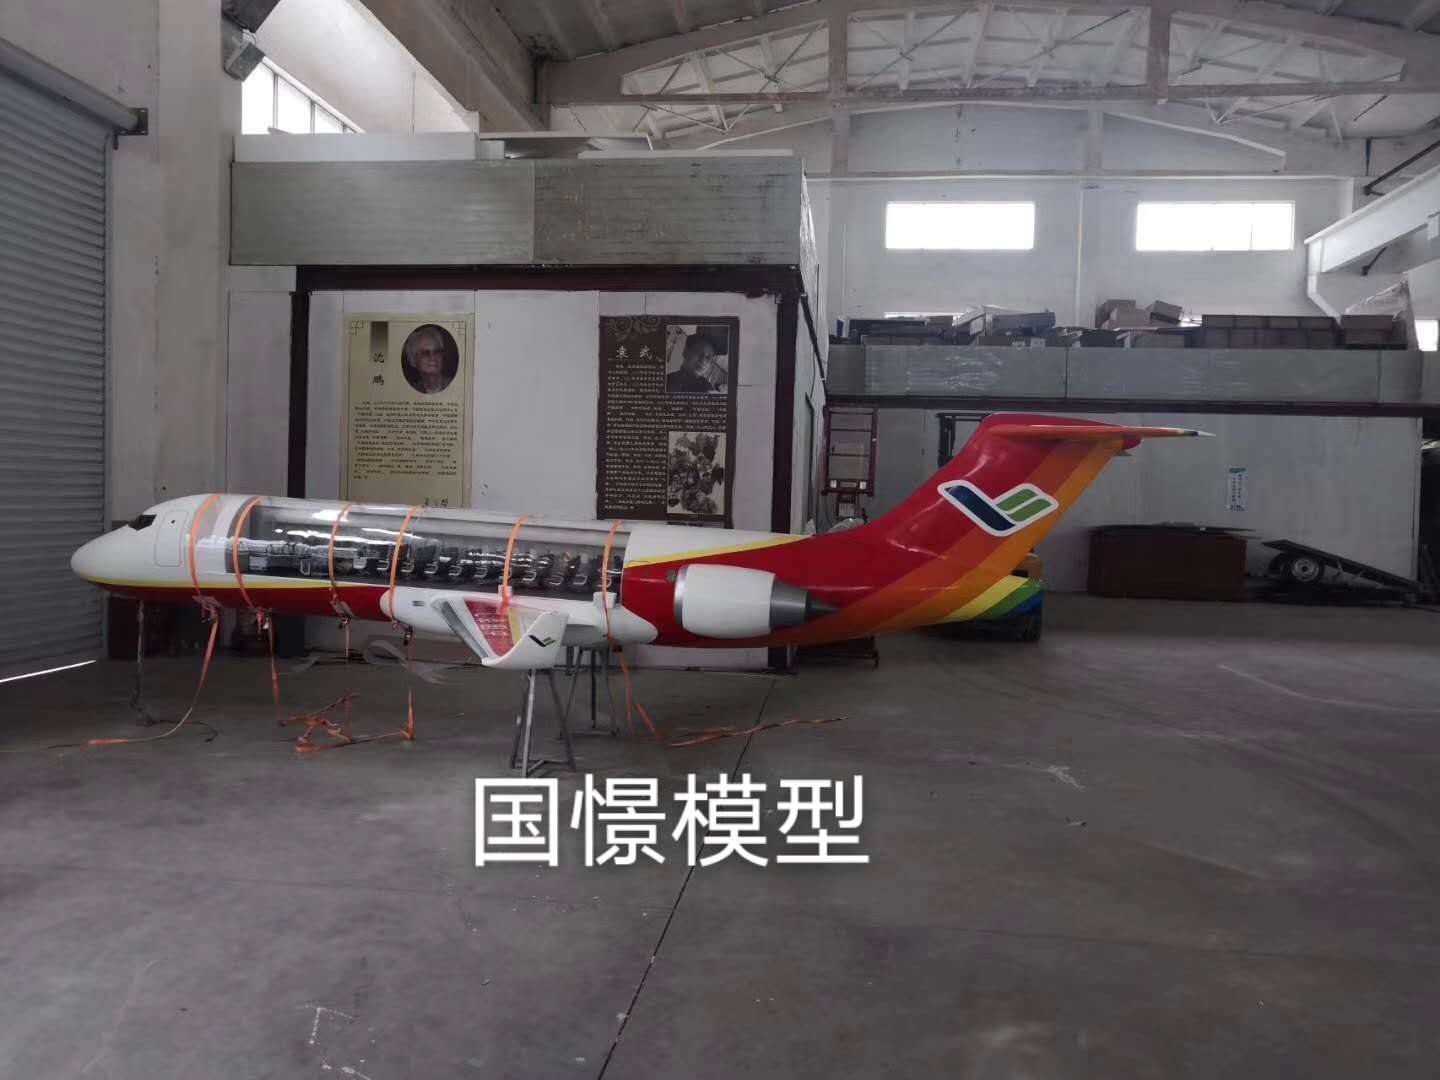 邳州市飞机模型